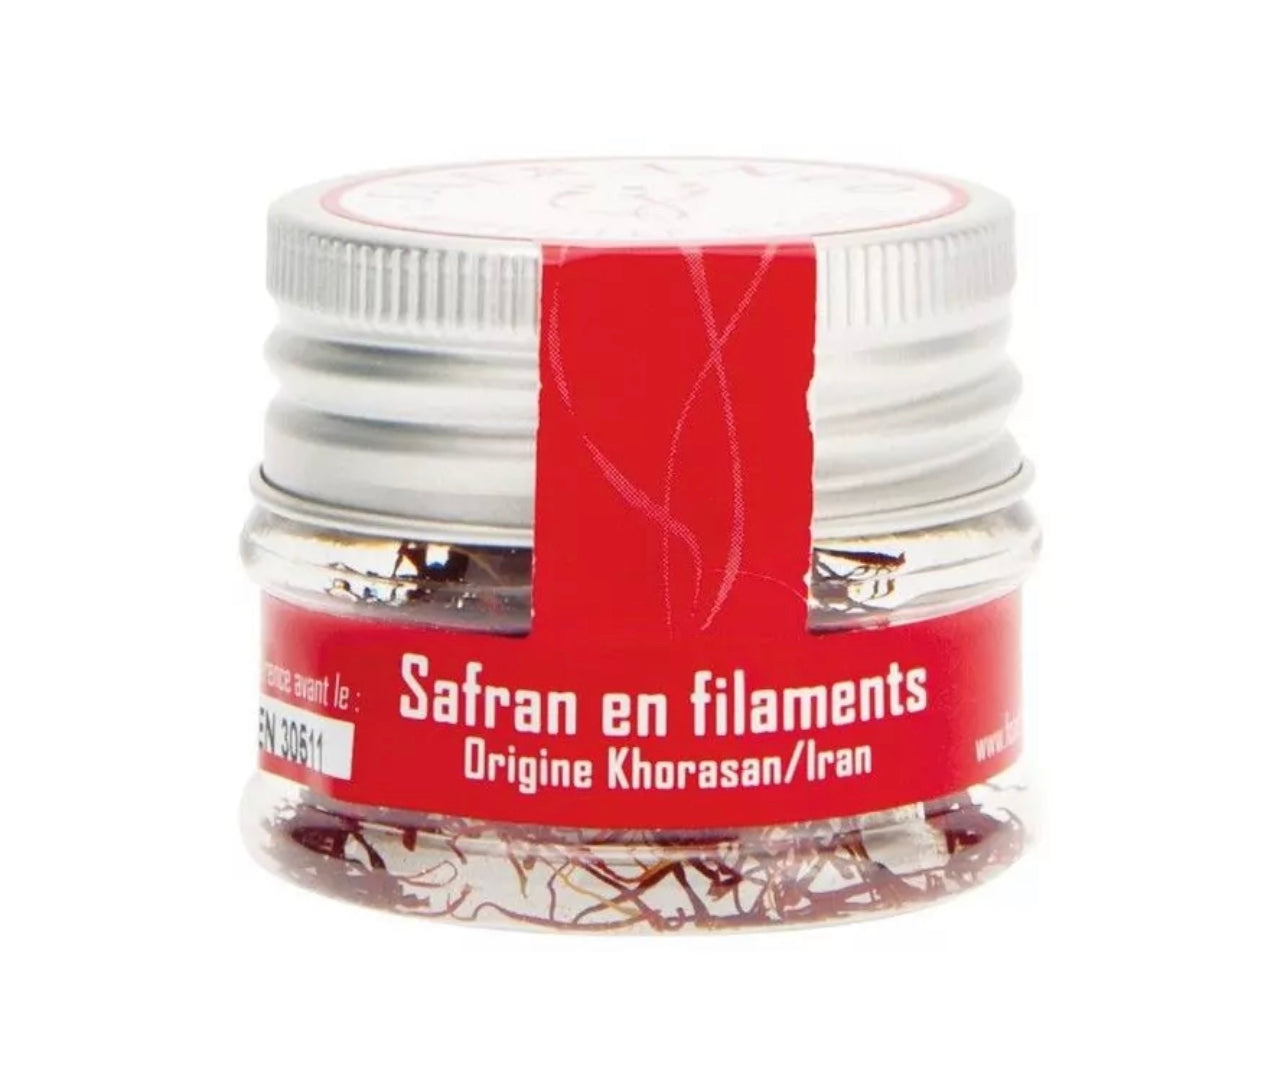 Iranian saffron extra filament quality - 5g